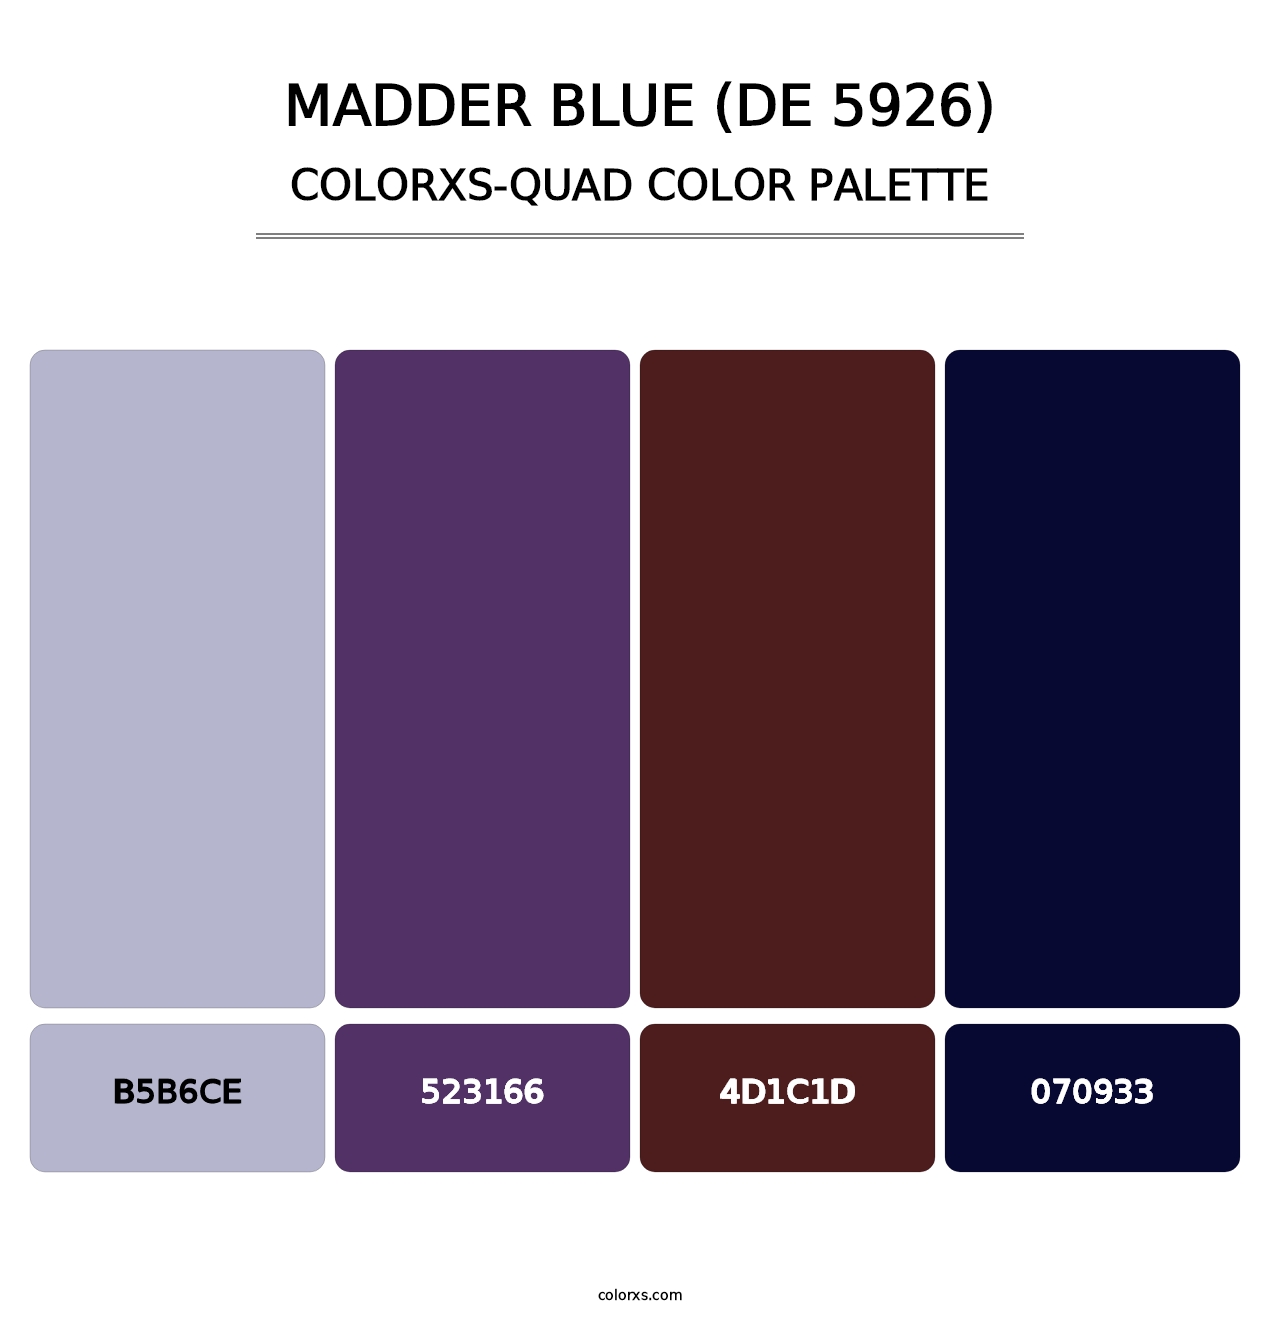 Madder Blue (DE 5926) - Colorxs Quad Palette